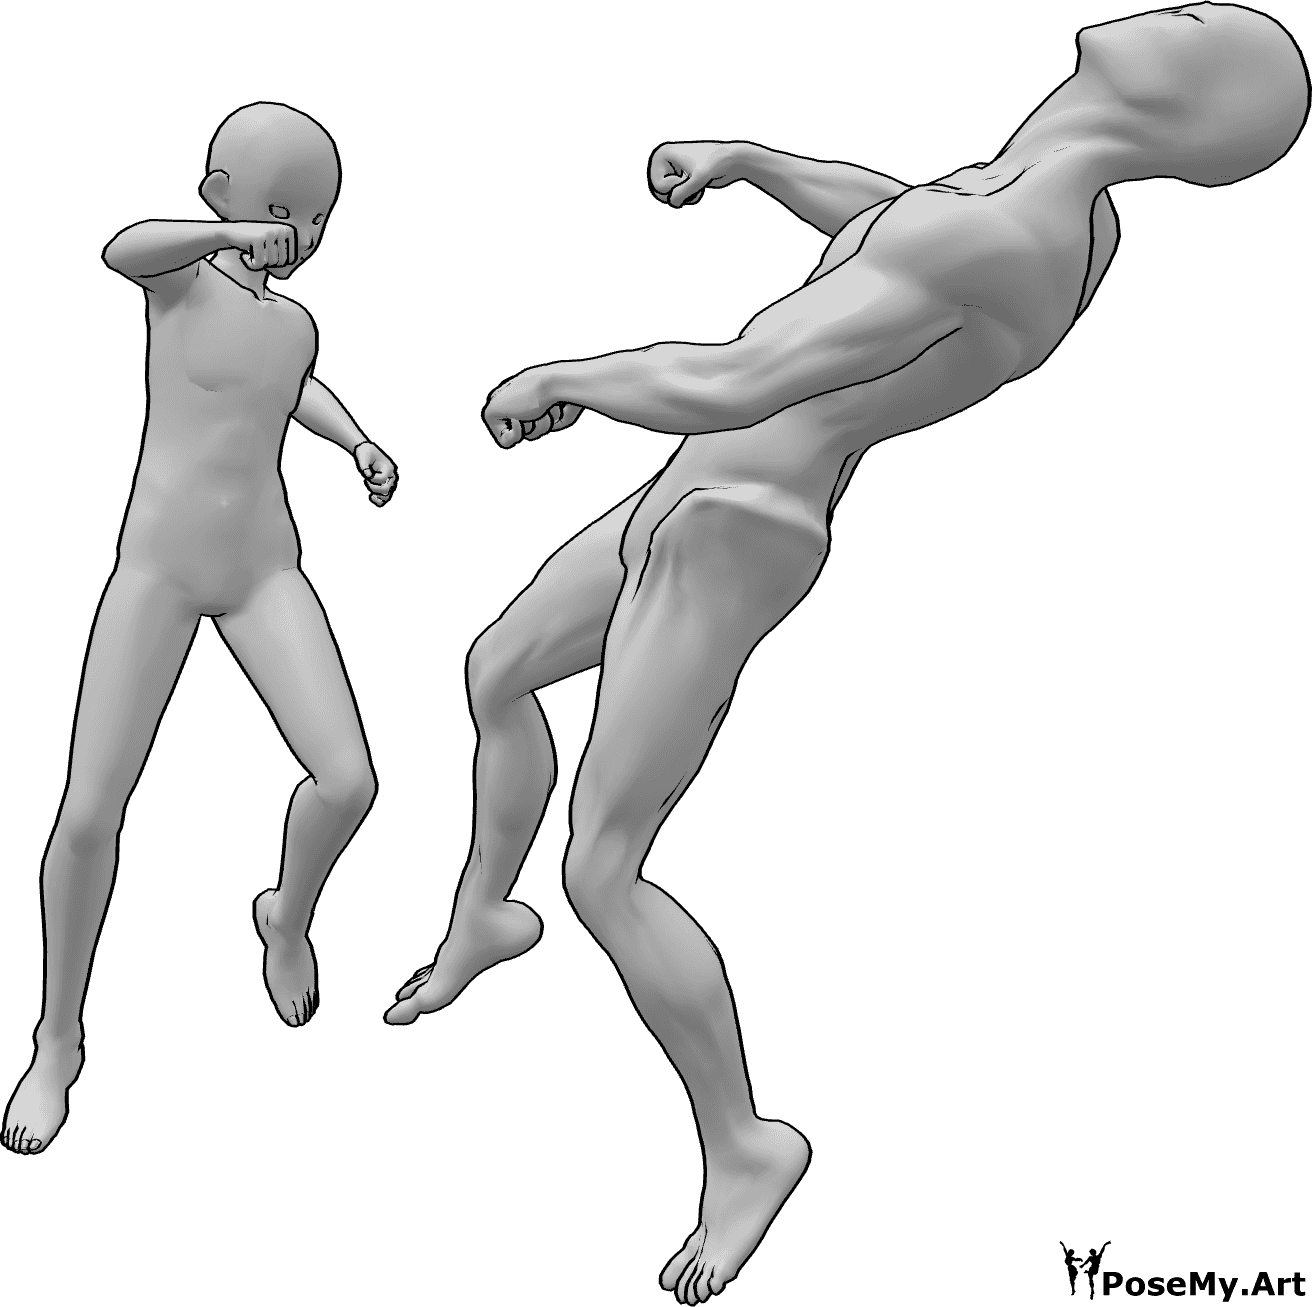 Referência de poses- Pose de nocaute de anime - O herói masculino de anime está a derrubar o inimigo que está a voar para trás inconscientemente